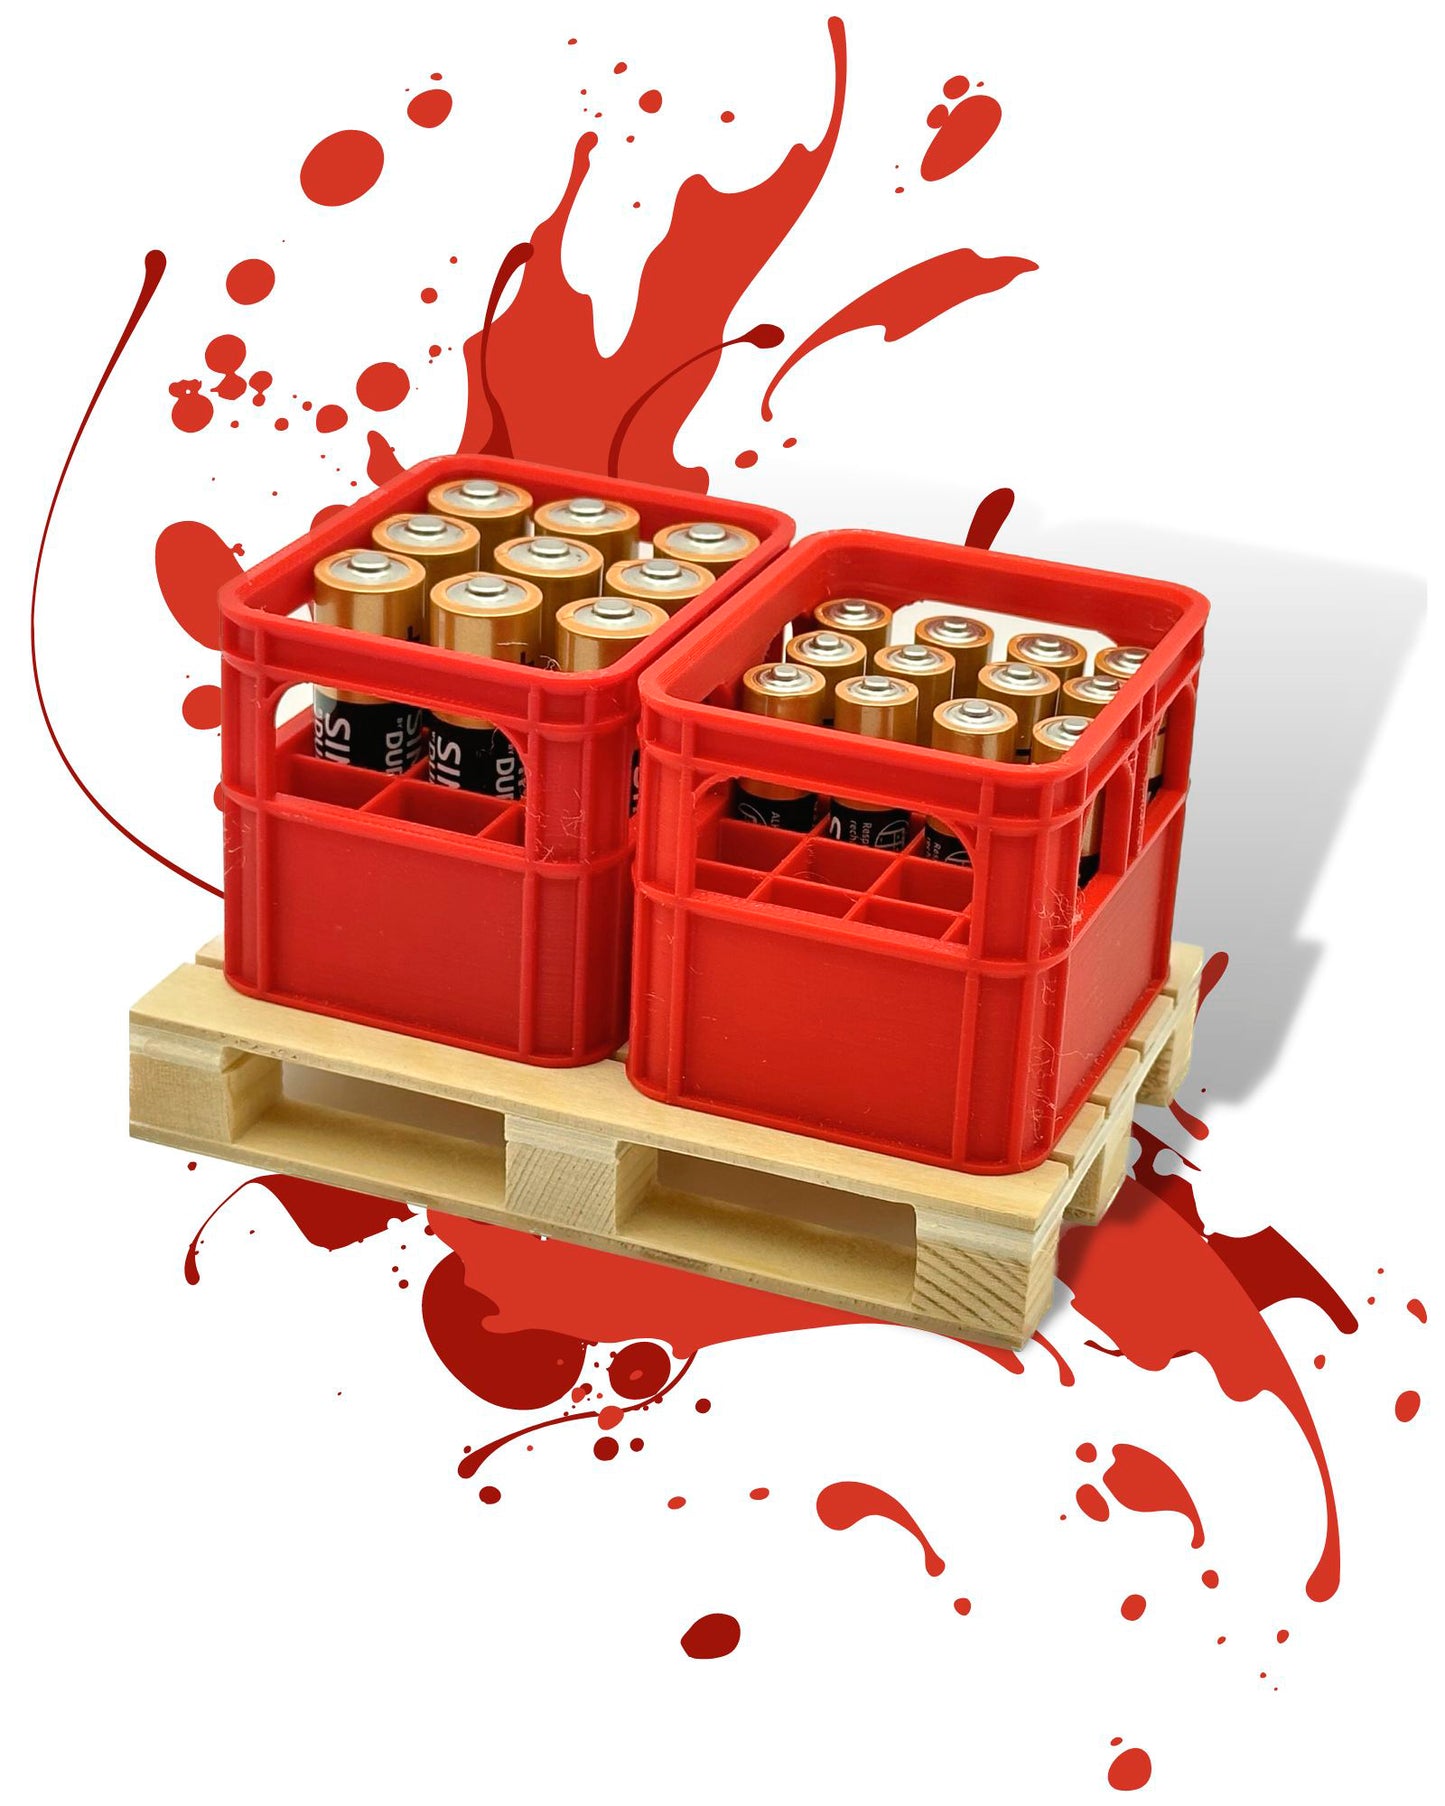 Caja de batería Caja de batería mini caja Mini caja para almacenar pilas AA y AAA en un juego con palet de madera